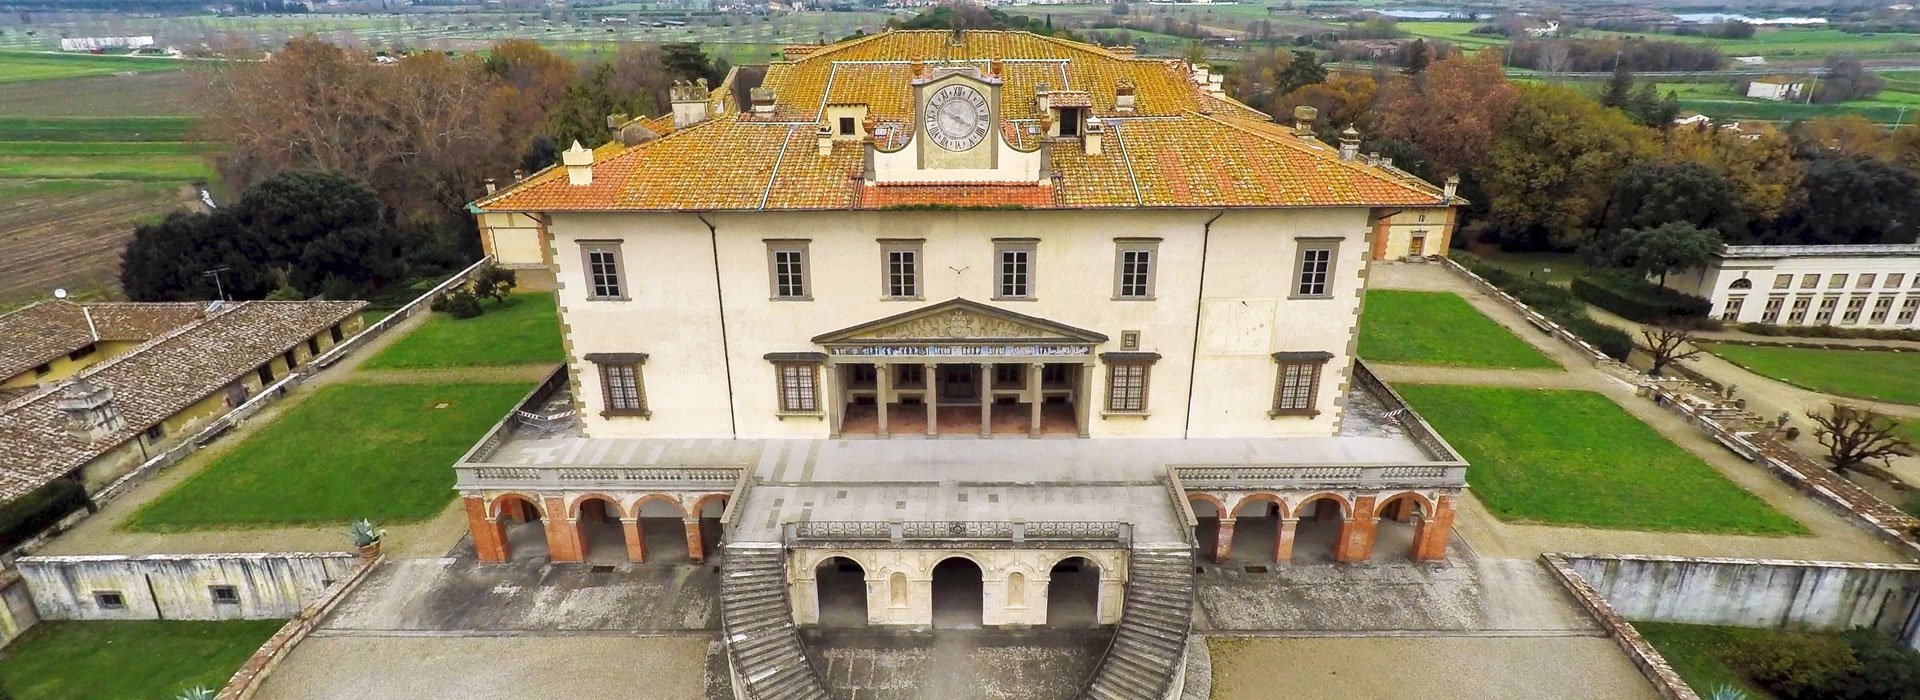 Villa Poggio a Caiano sito unesco Toscana